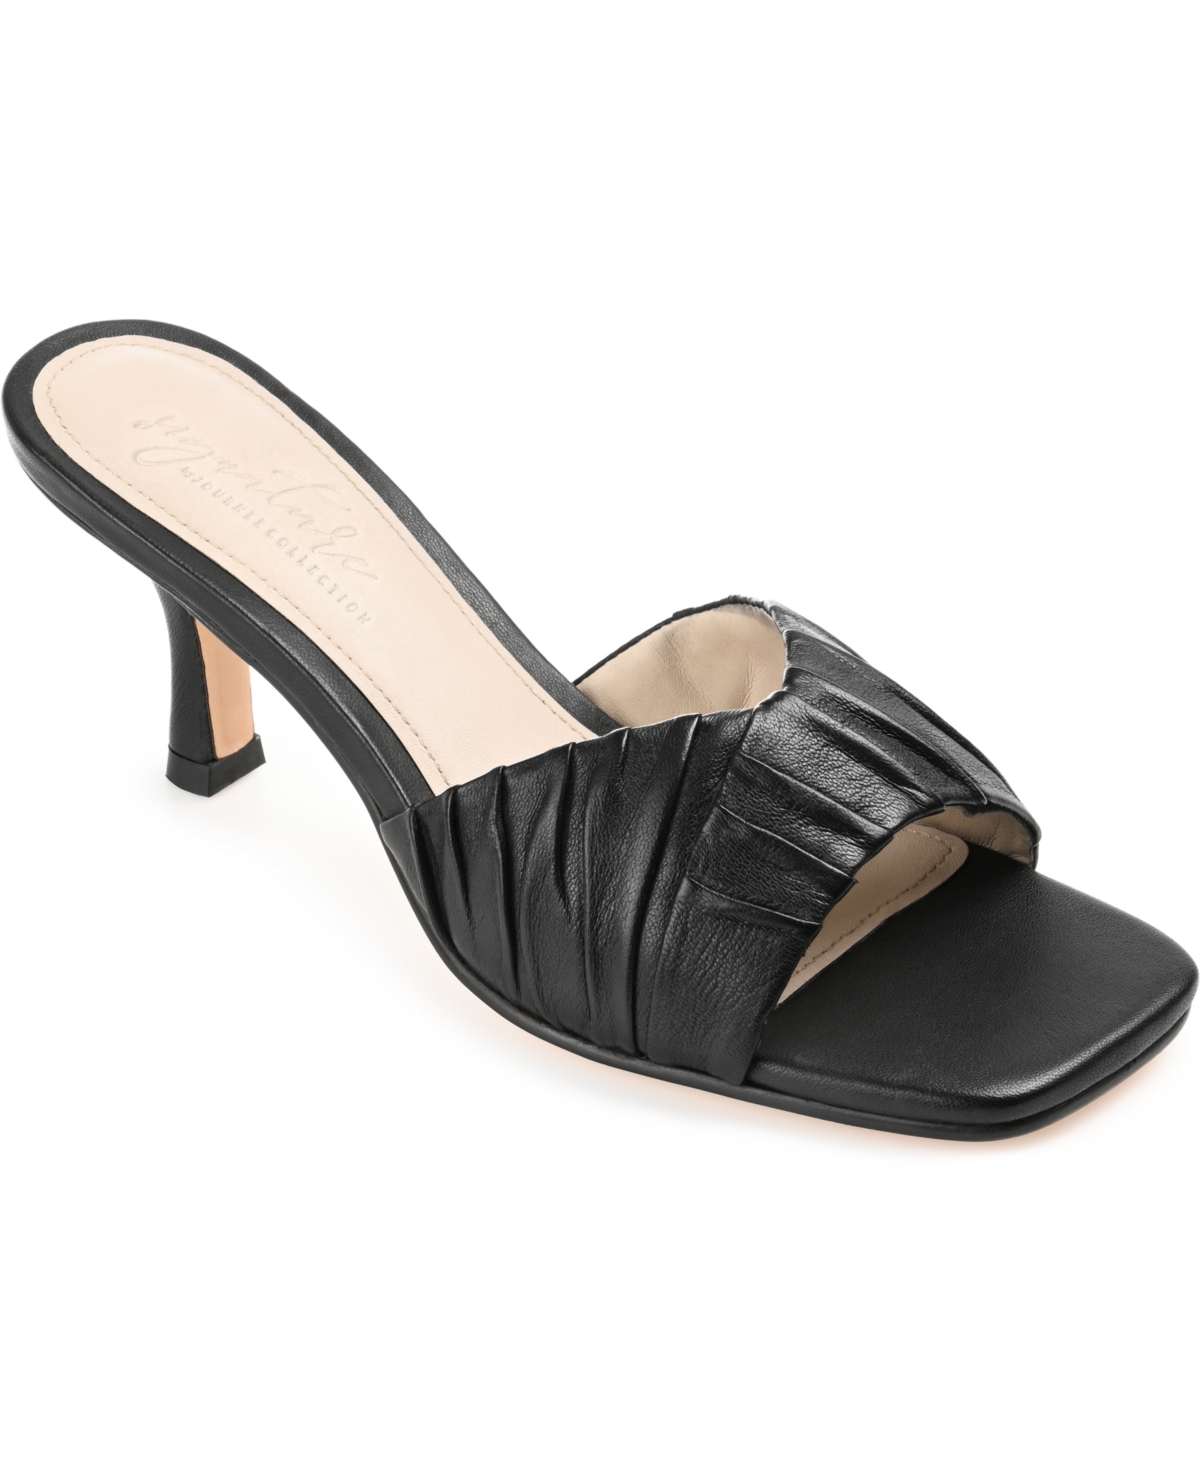 Women's Juliette Leather Open Toe Dress Sandals - Tan